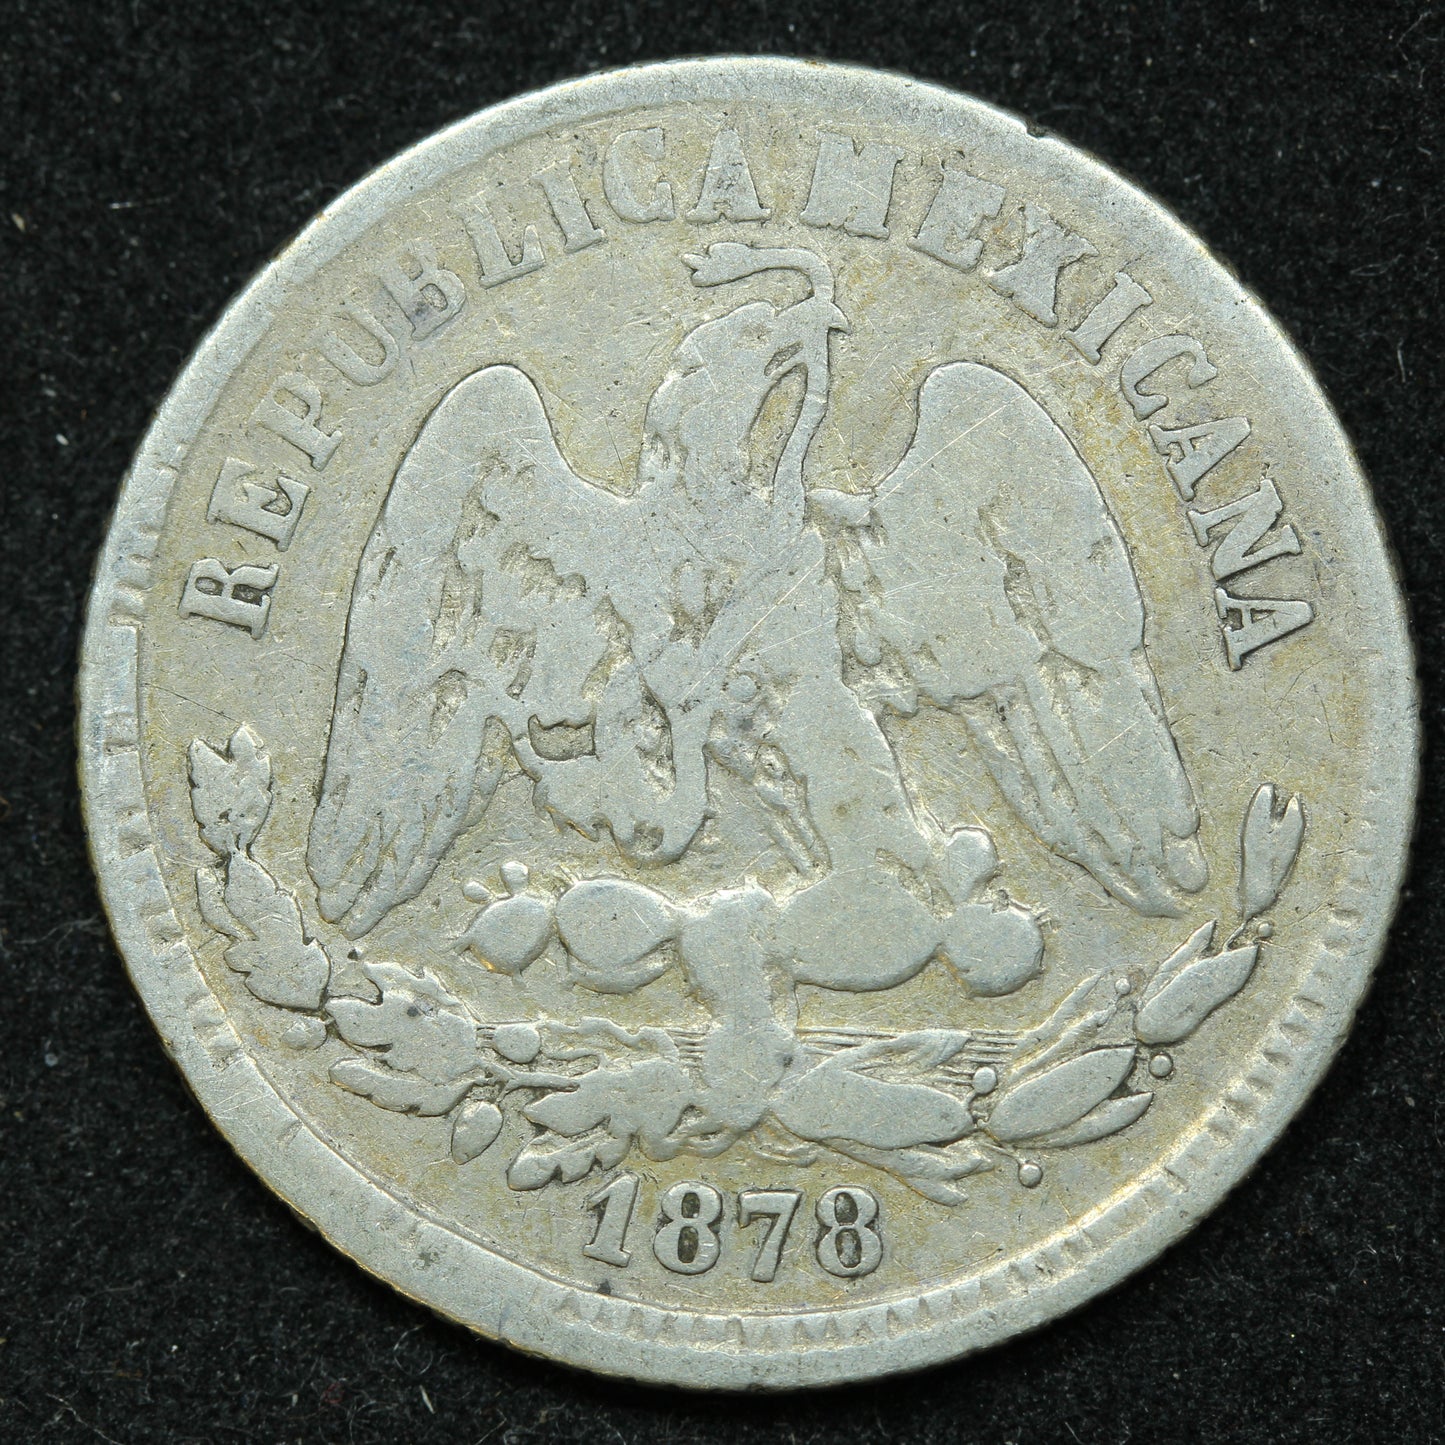 1878 25 Centavos Go S Mexico Silver Coin - KM# 406.5